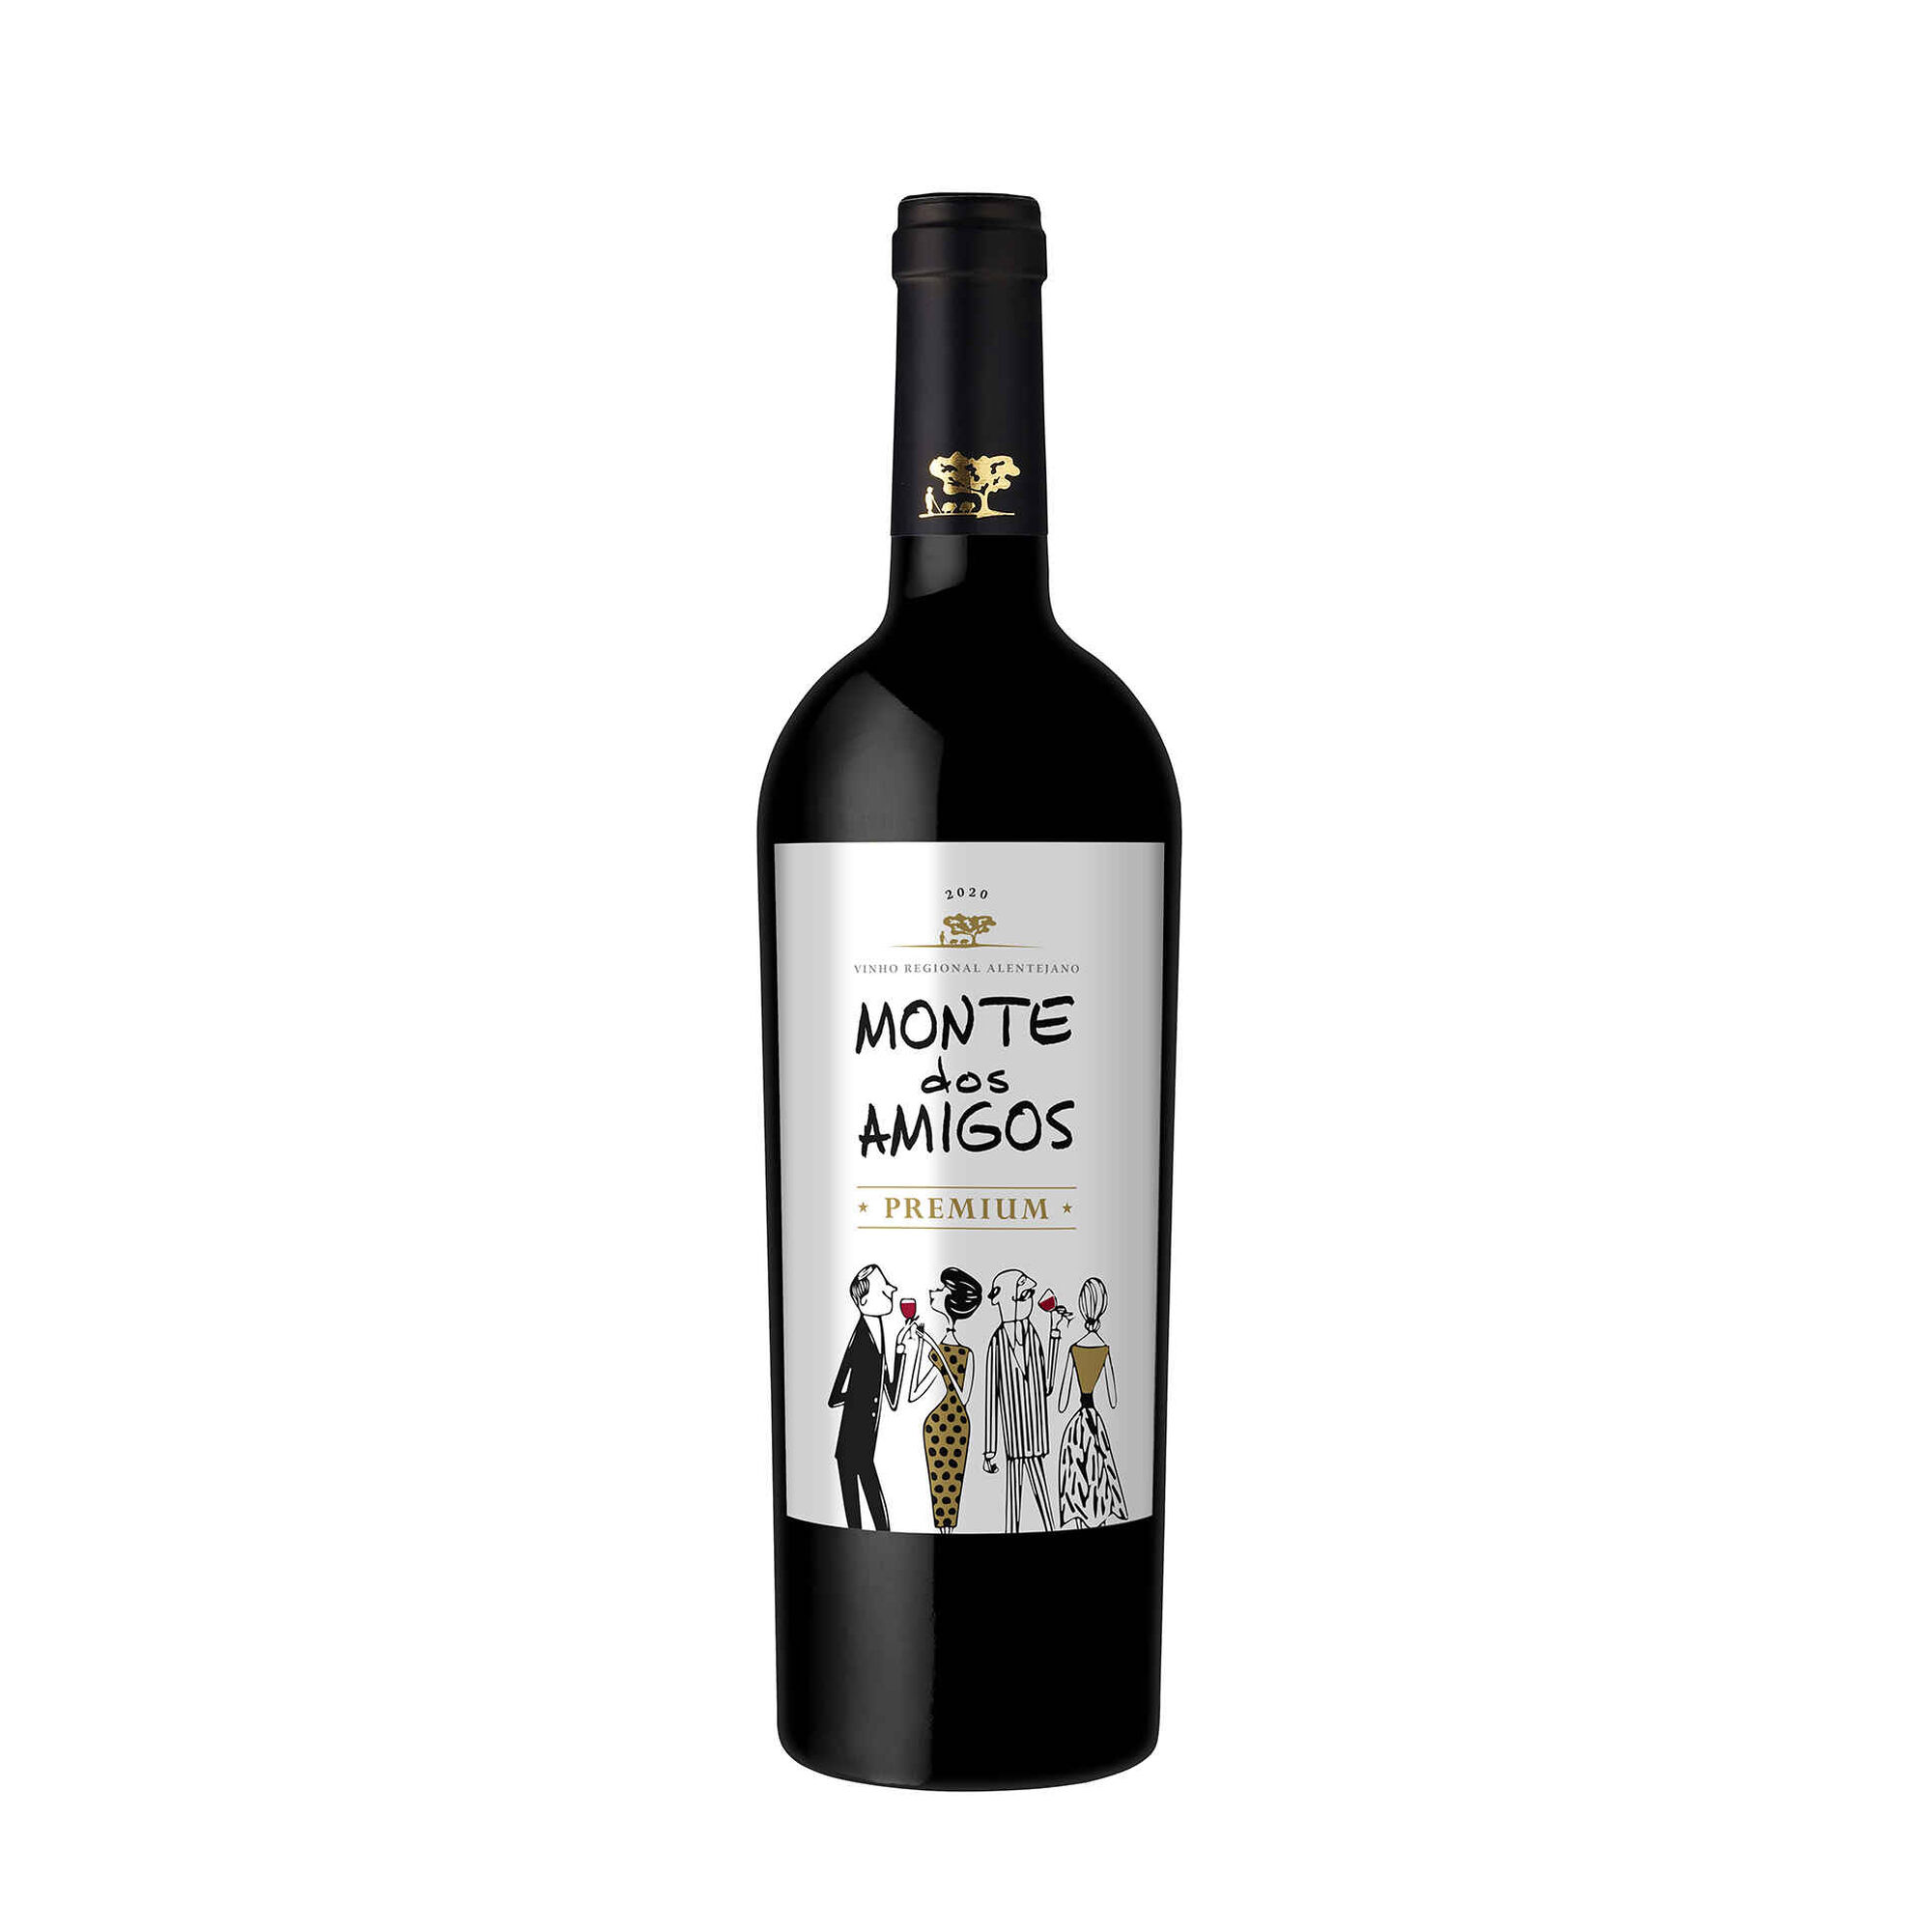 Monte dos Amigos Premium Regional Alentejano Vinho Tinto